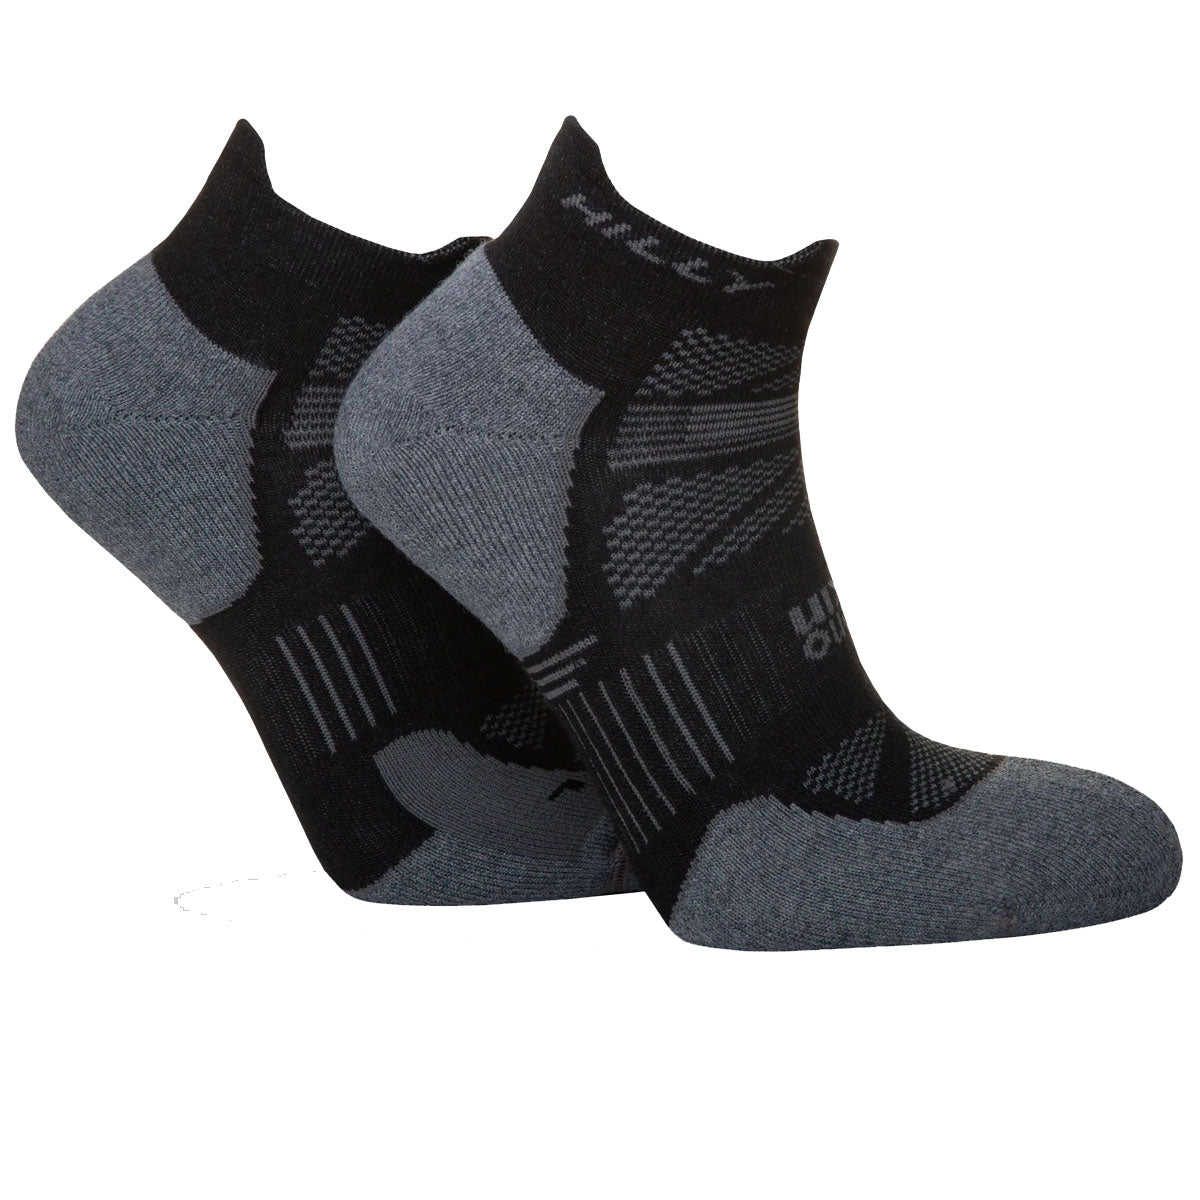 Hilly Supreme Anklet Med Socks - Mens - Black/Grey Marl